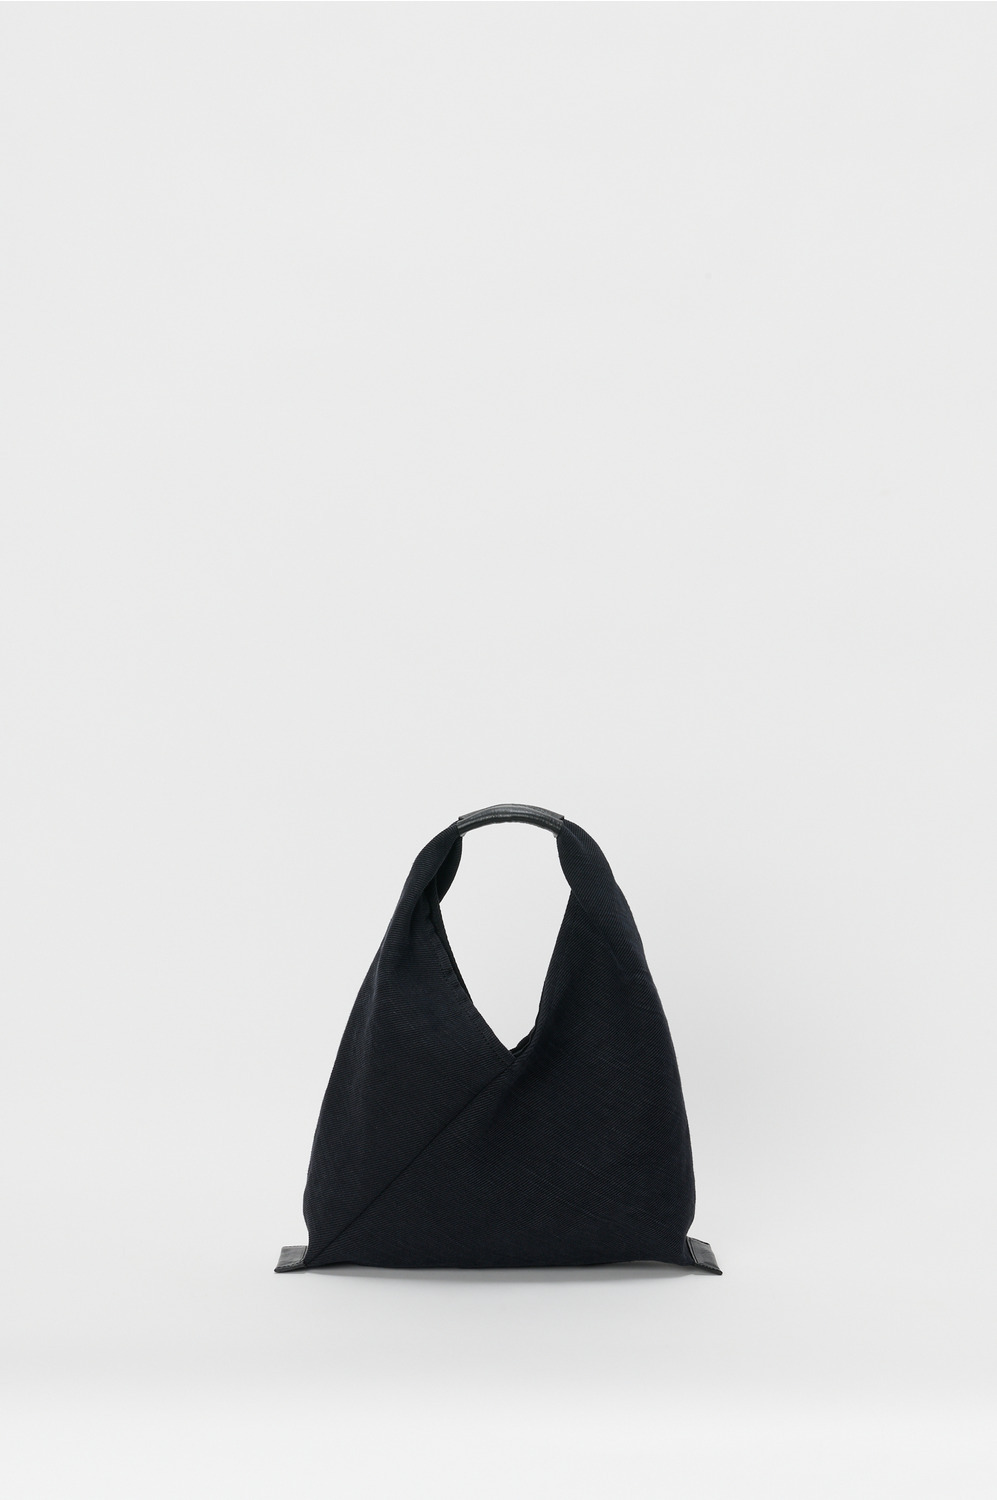 azuma bag small 詳細画像 black 1